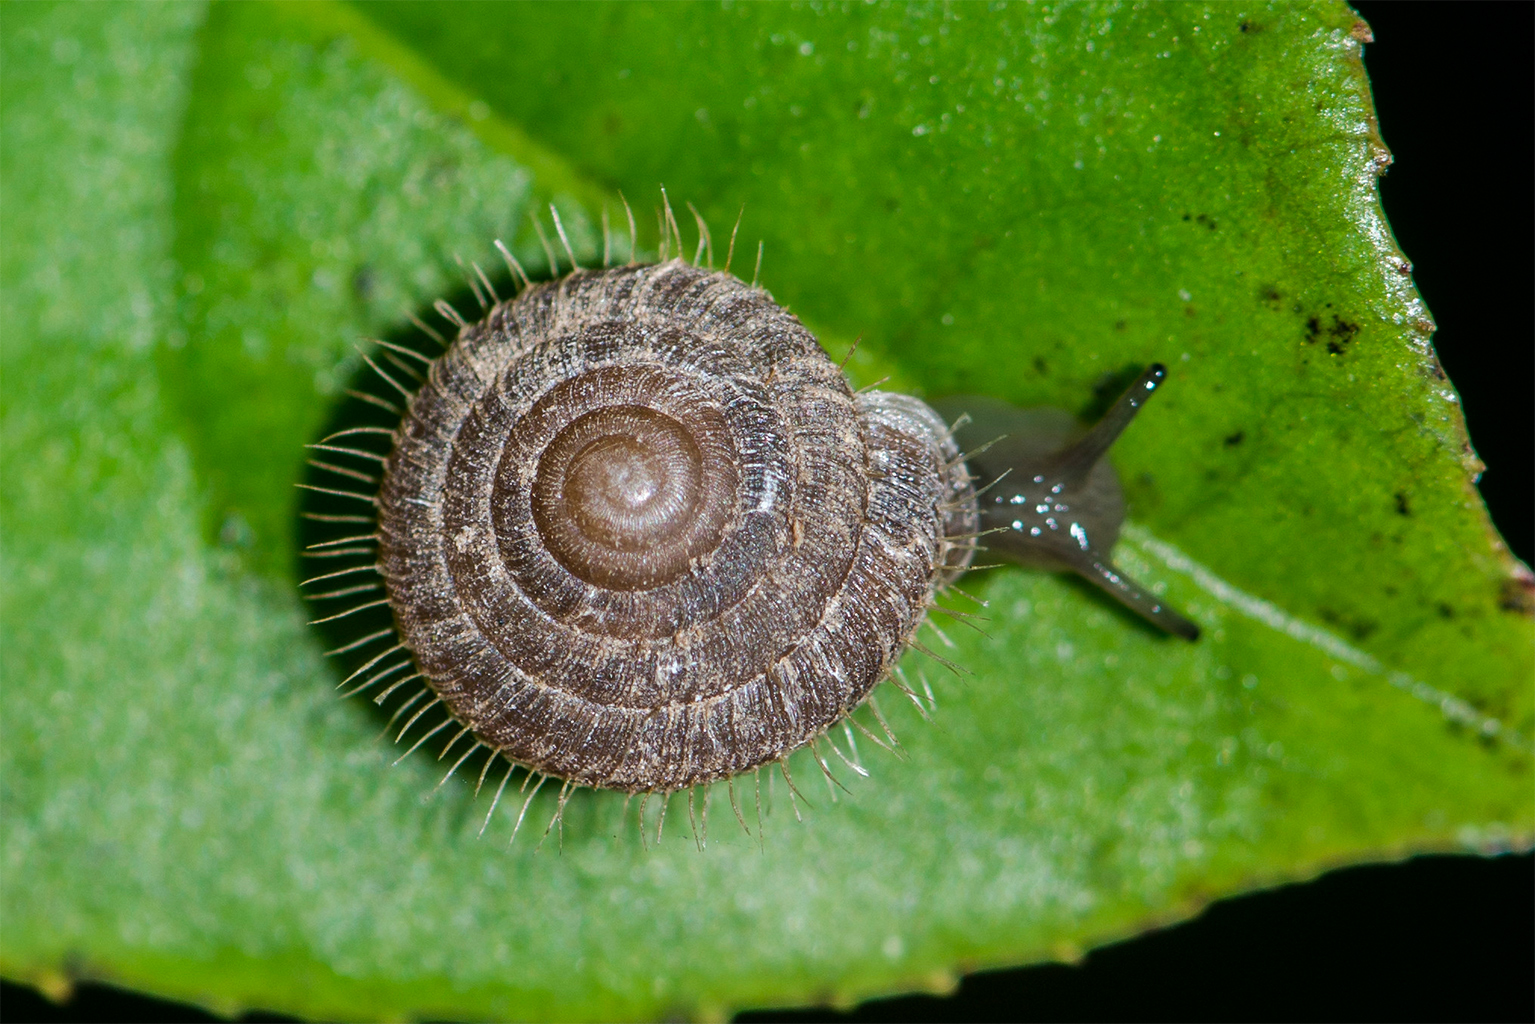 An Endothyrella snail.